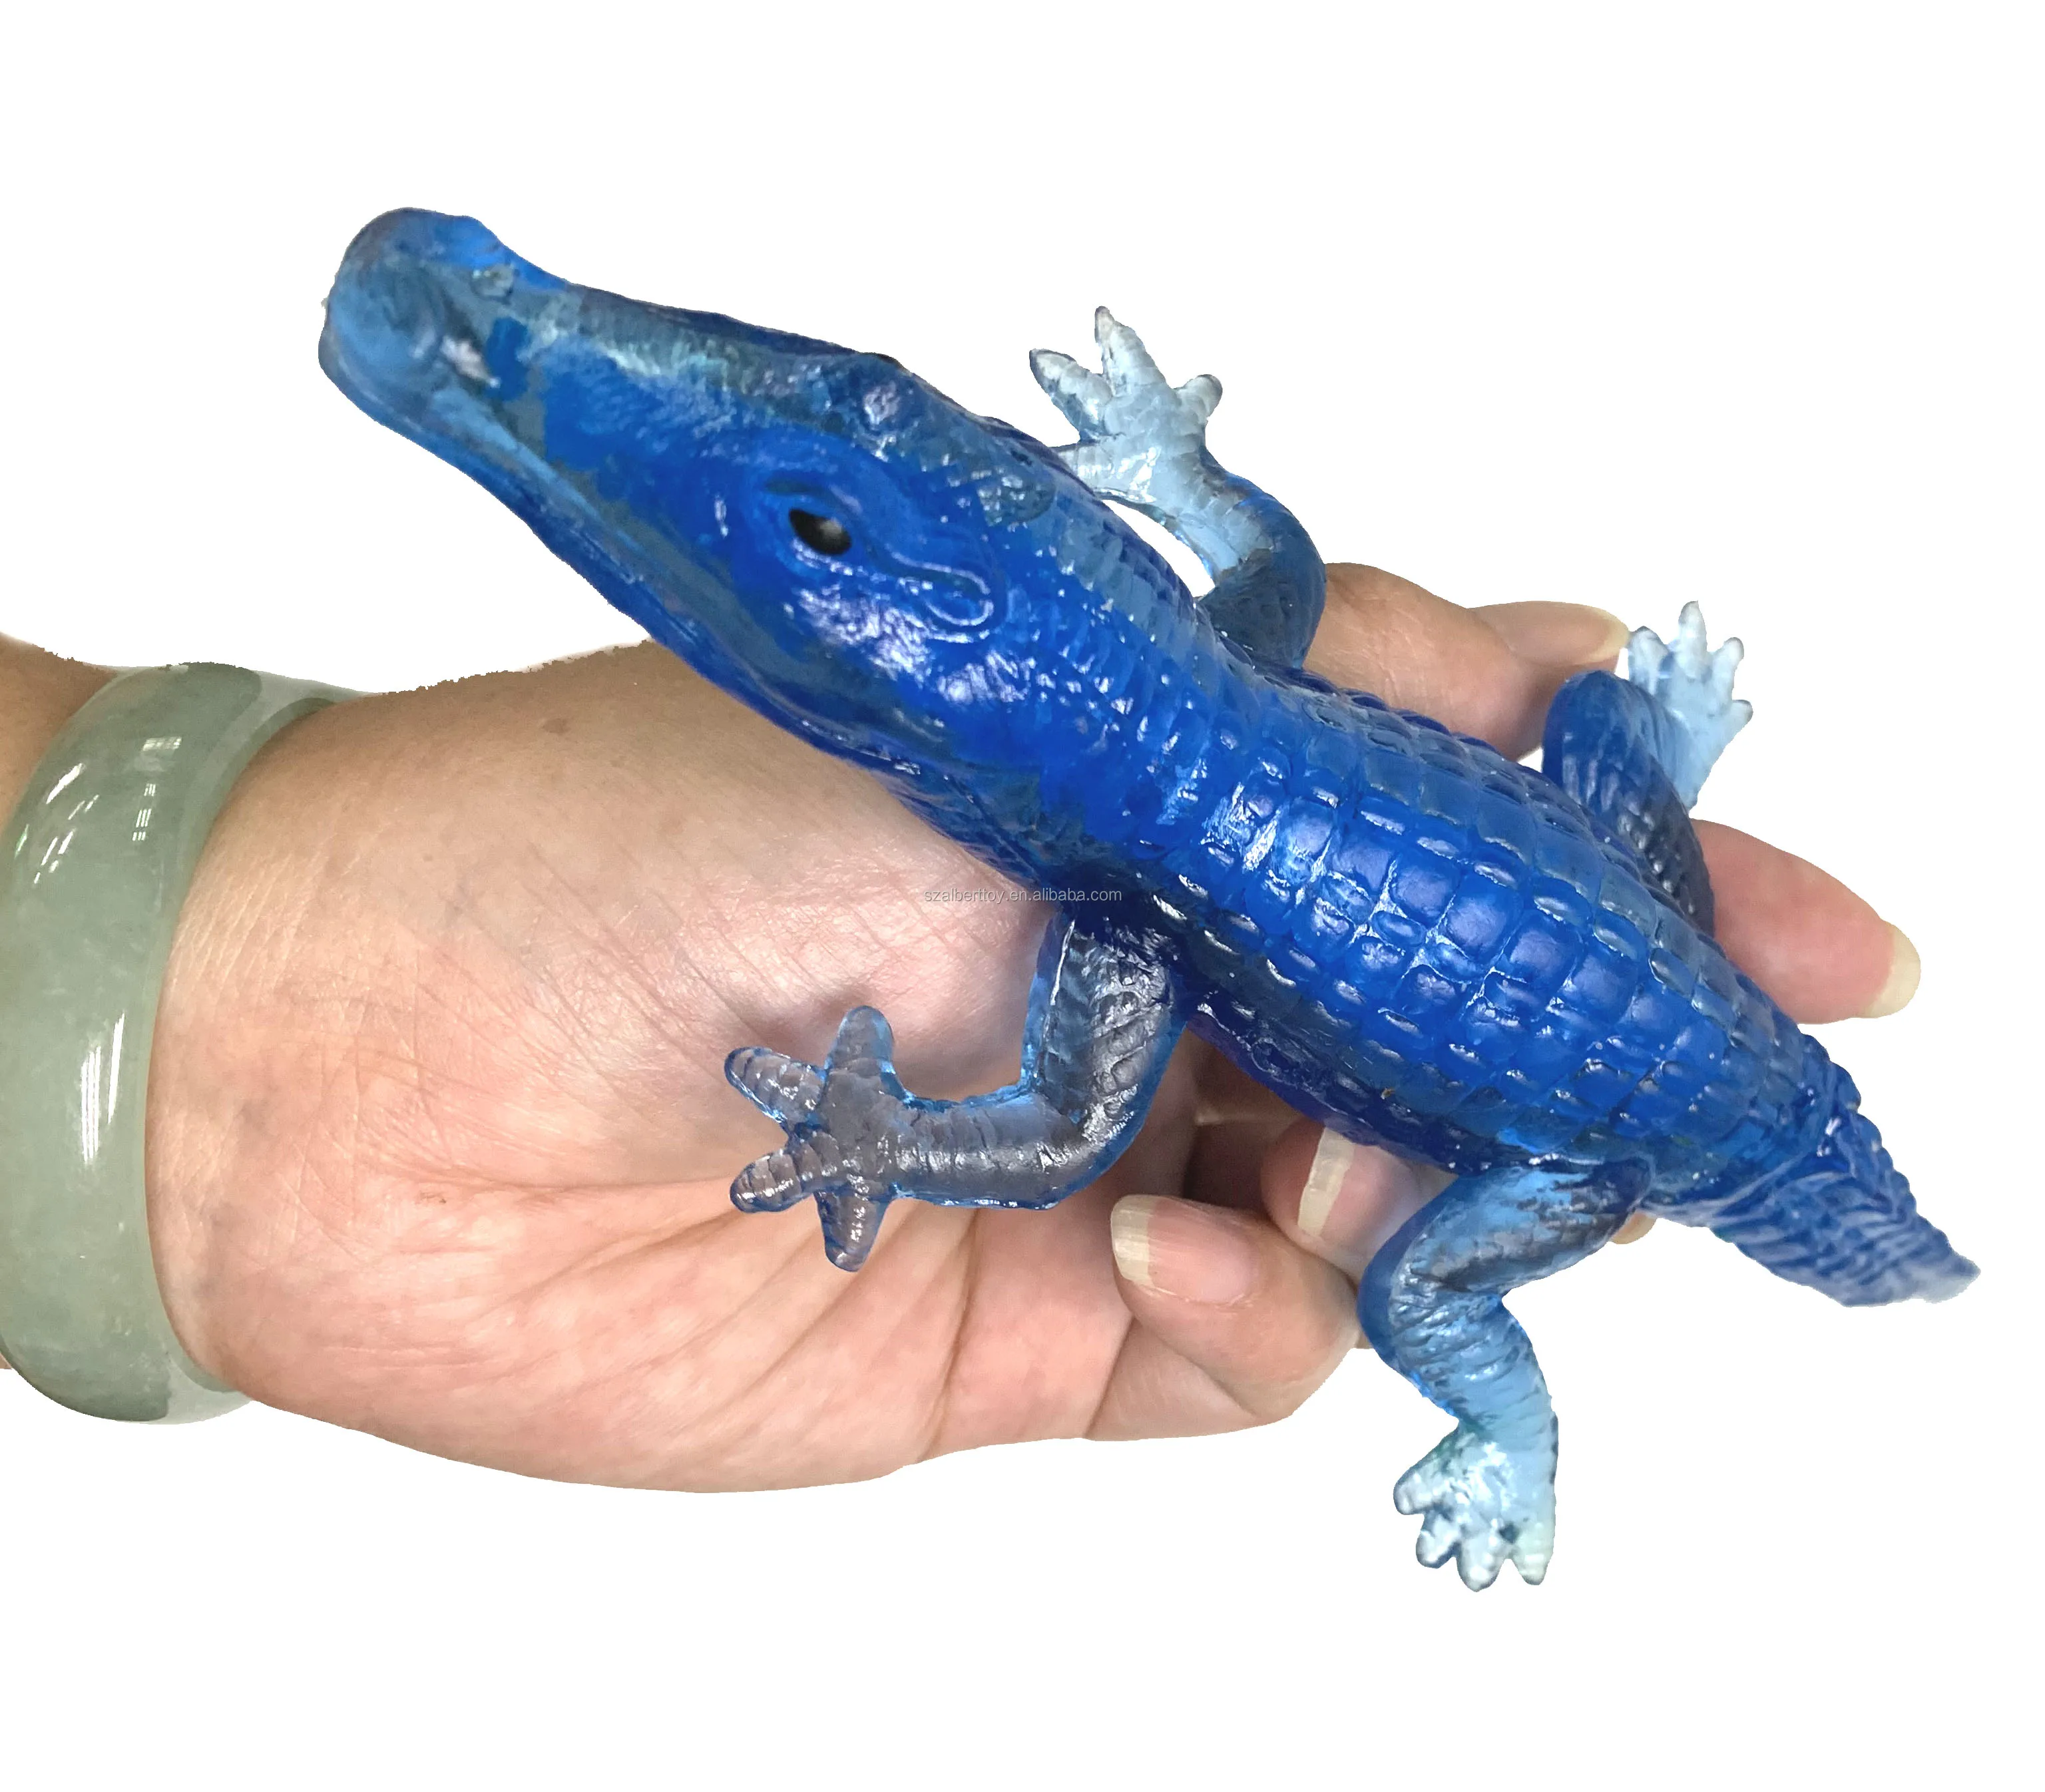 Mignon et sûr caoutchouc crocodile jouet, parfait pour offrir - Alibaba.com